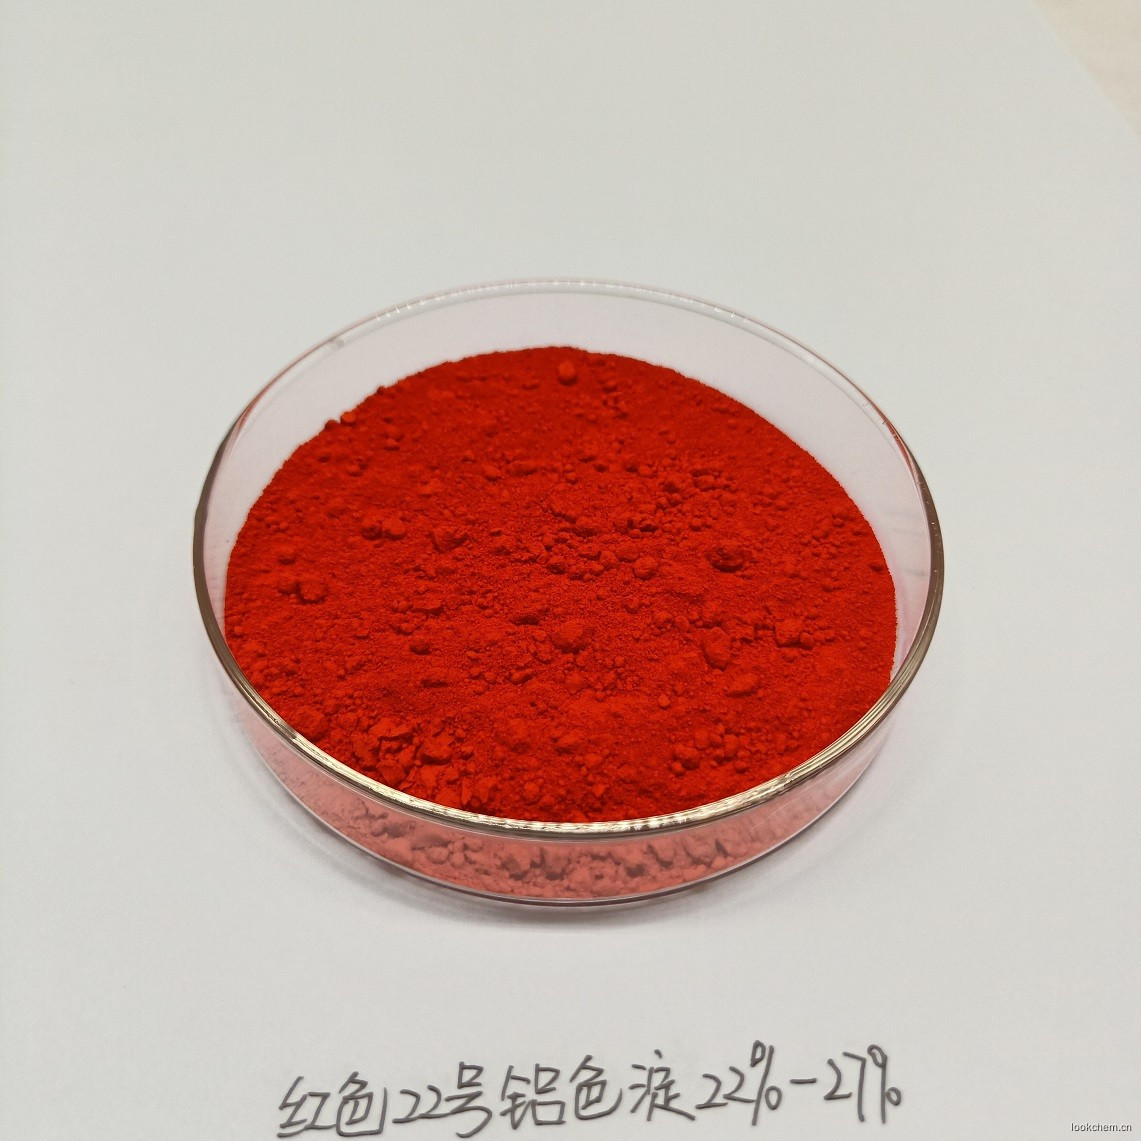 红22色淀22-27% CI 45380:3 化妆品专用色淀